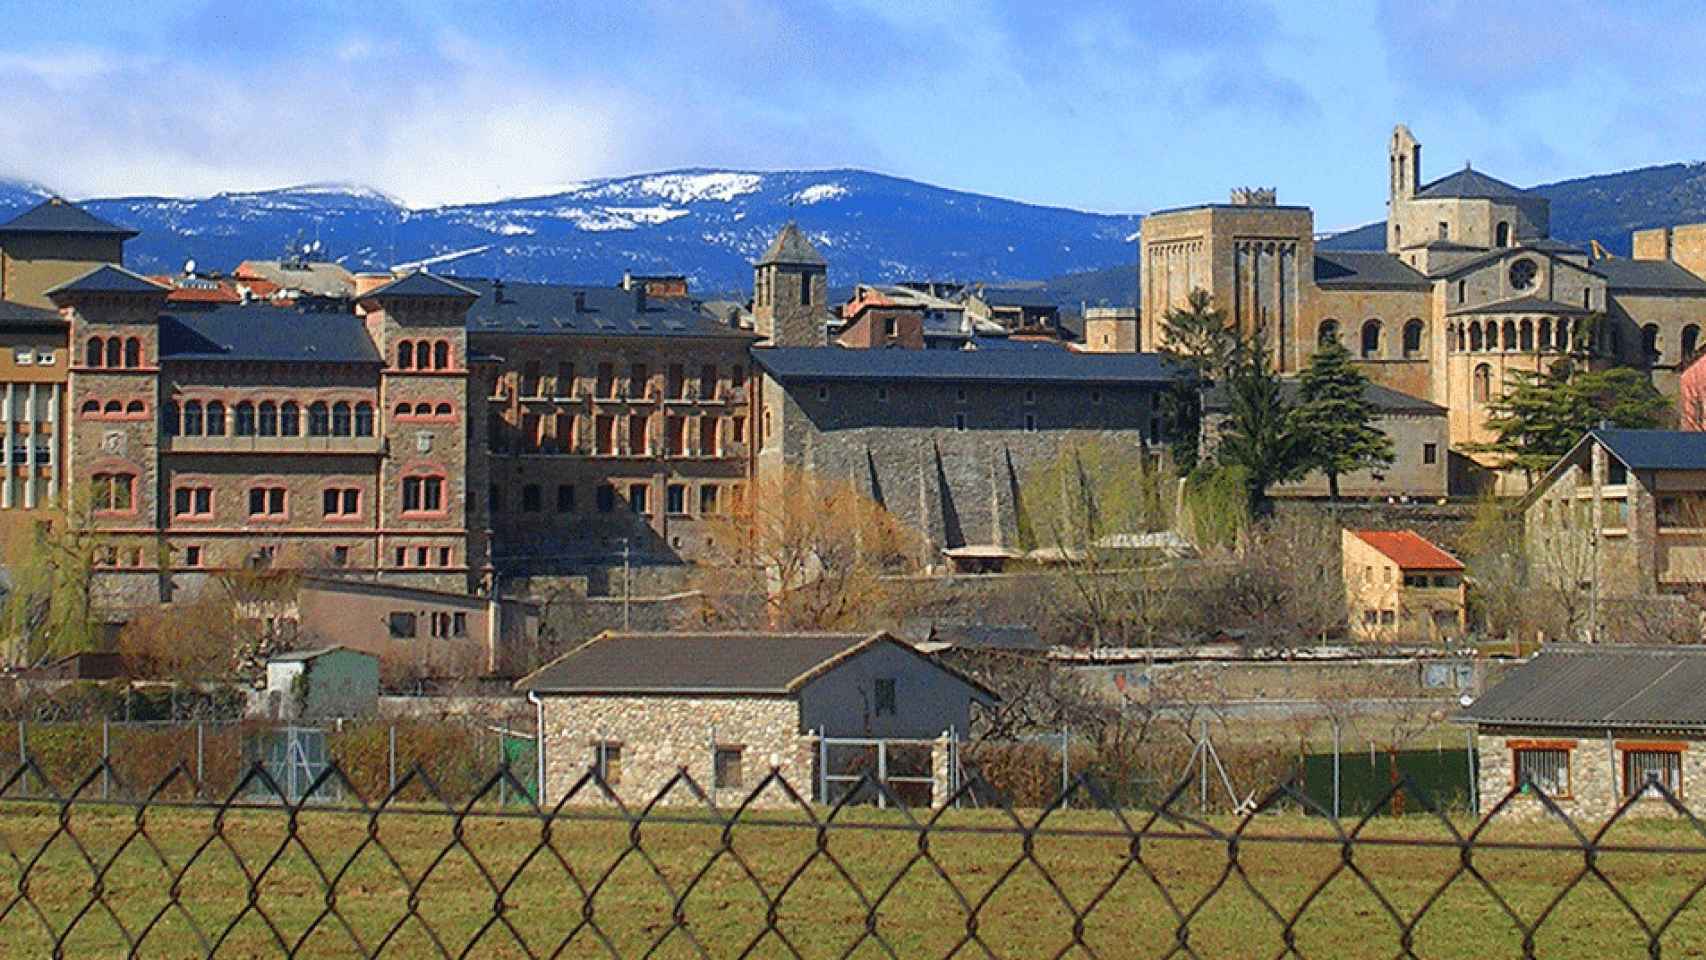 Vista general de La Seu d'Urgell